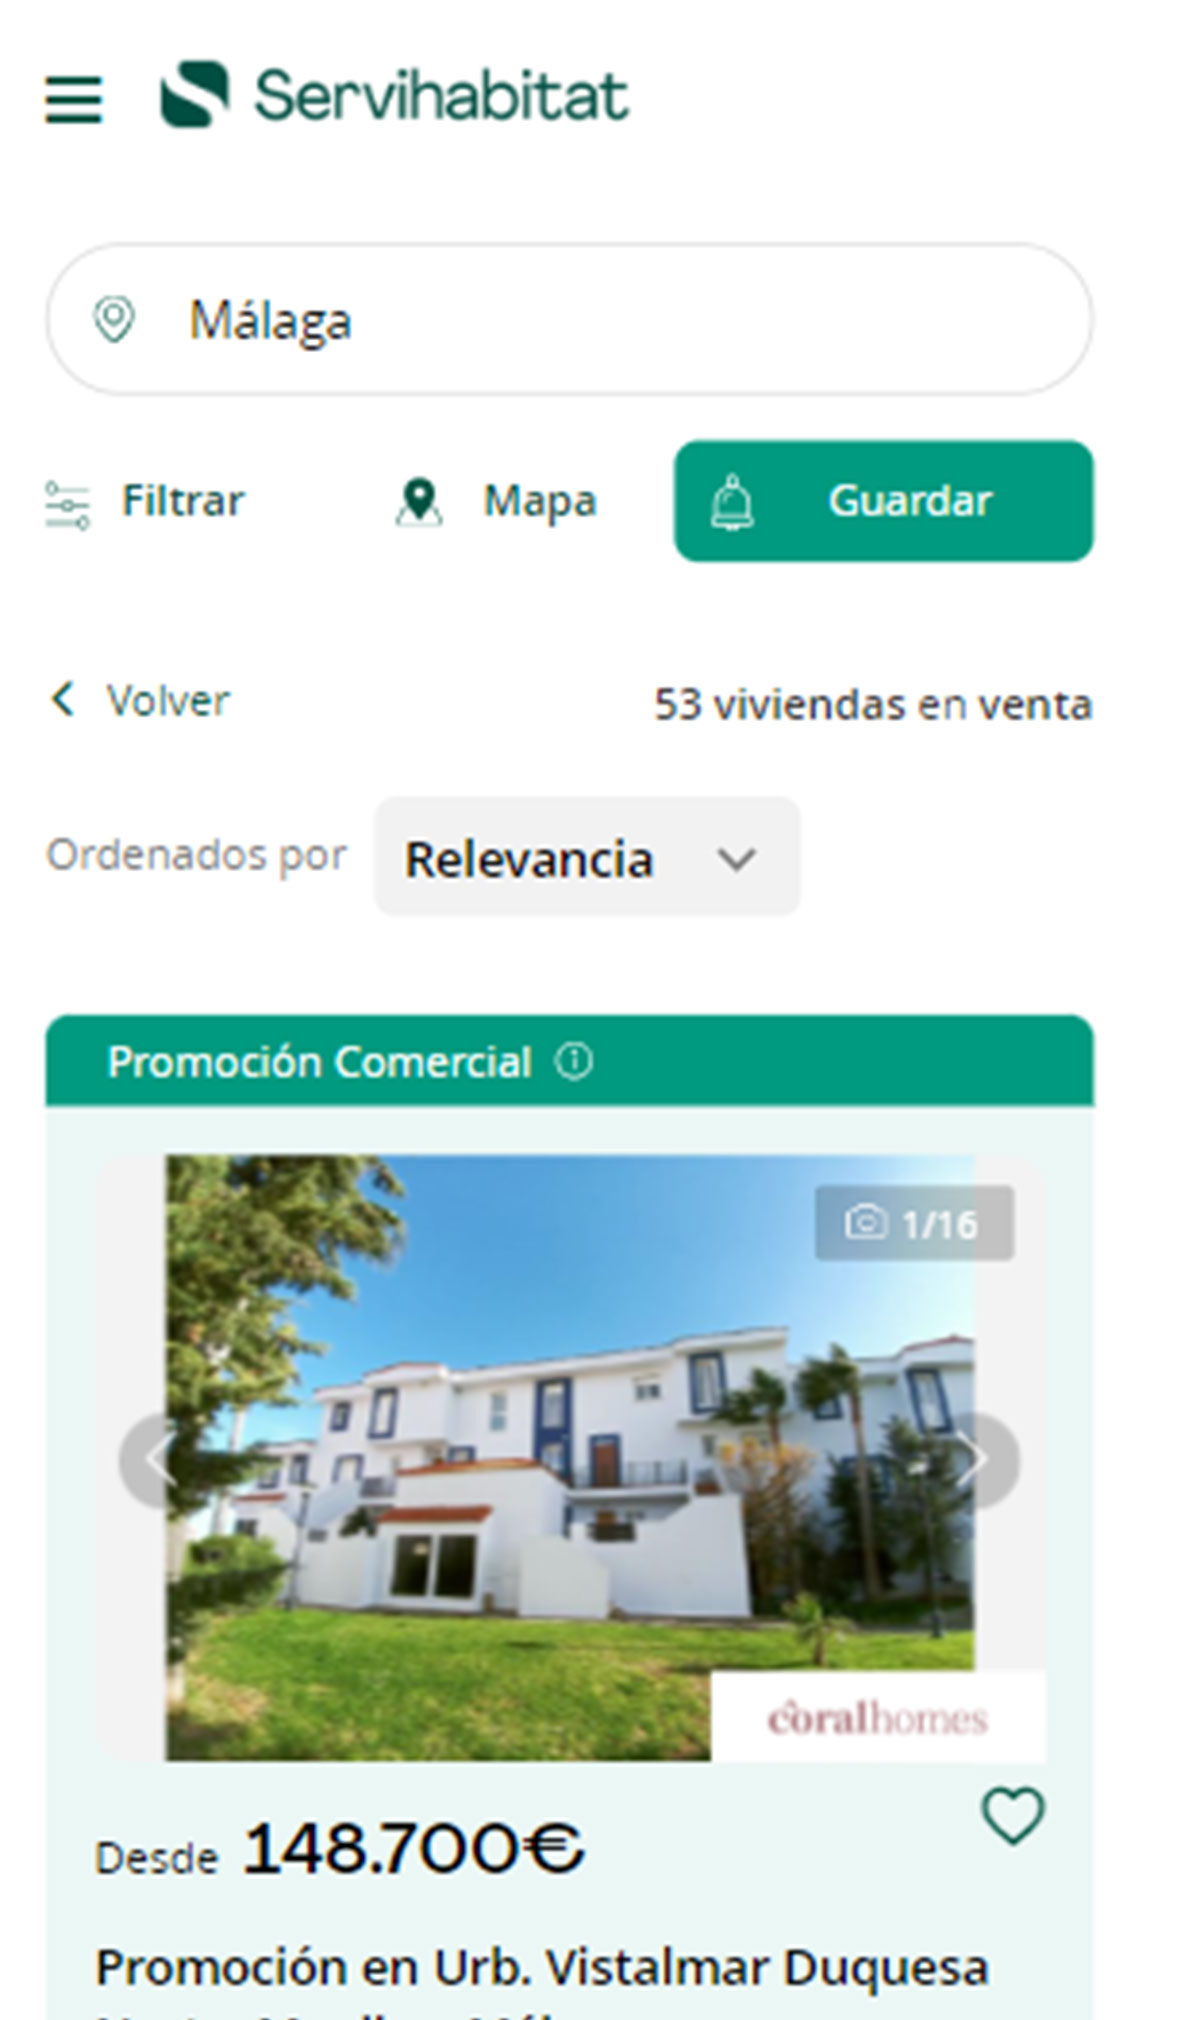 Catálogo de viviendas en Málaga de Servihabitat